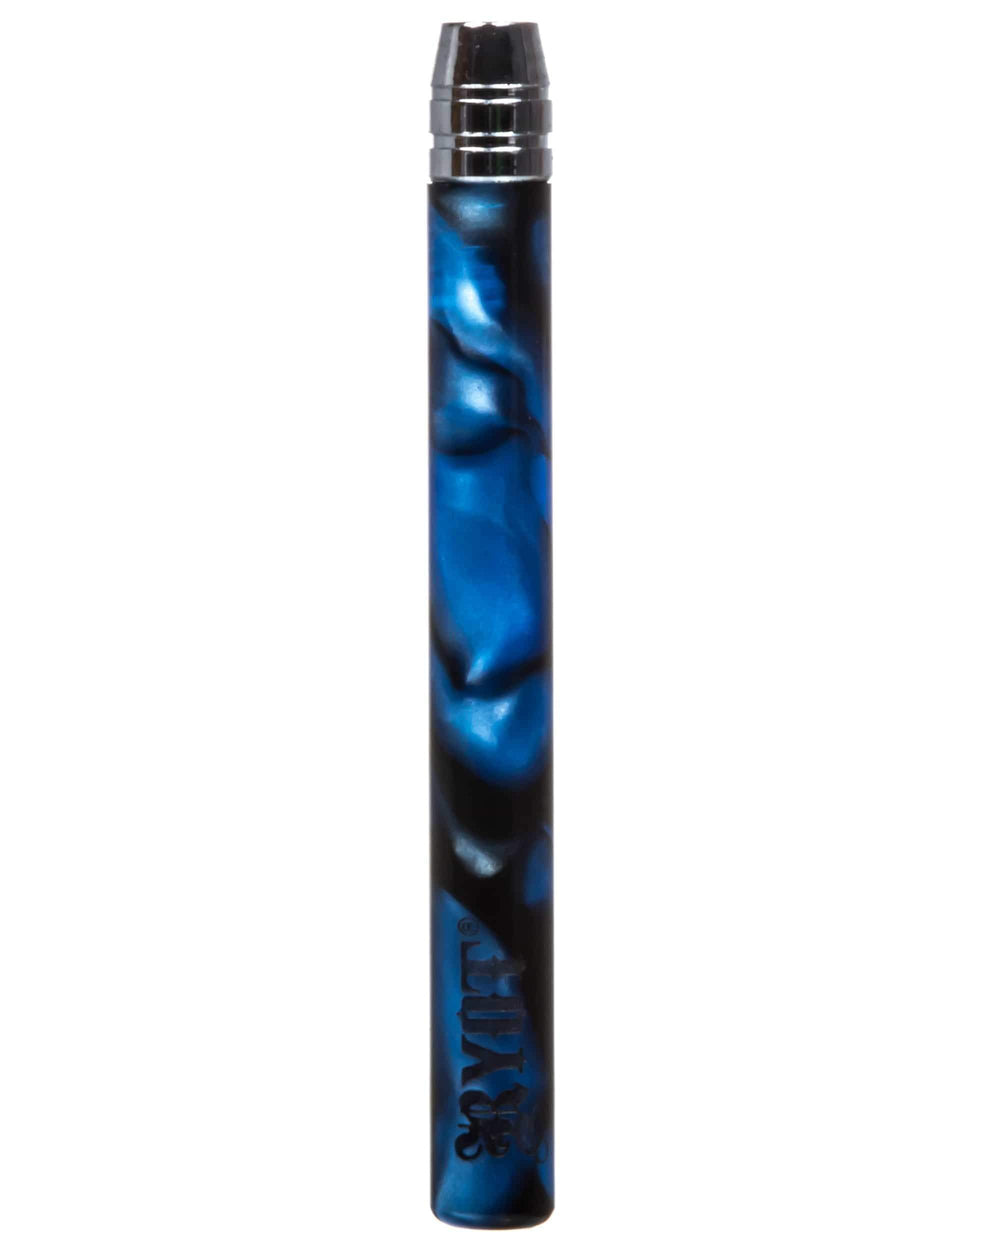 RYOT 420 Hardware Blue RYOT Acrylic One Hitter Bat-Large RYOT Acrylic One-Hitter Bat - Morden Vape & 420 SuperStore, Manitoba, Canada